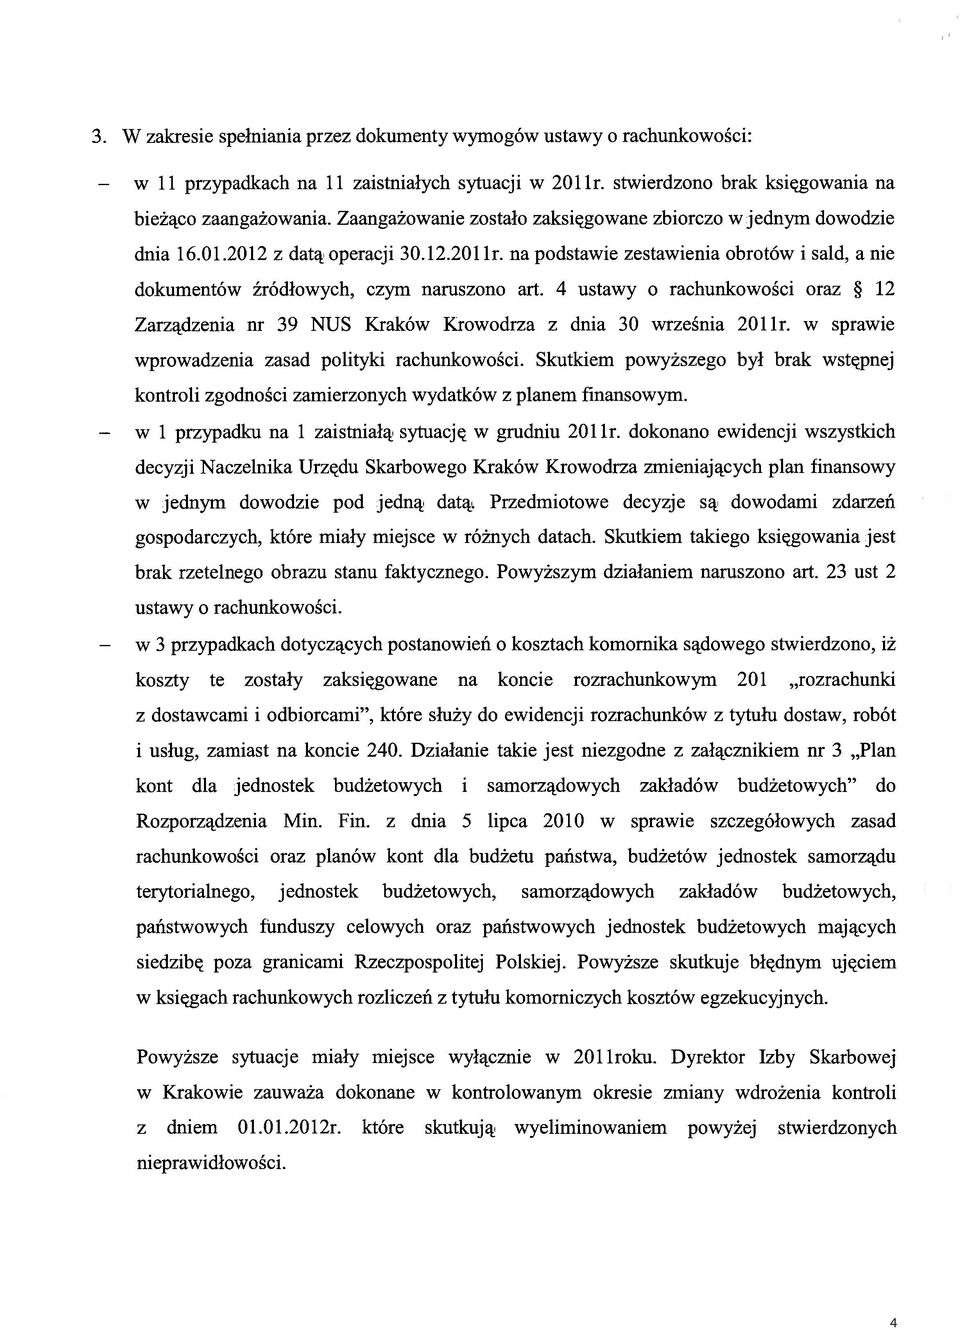 4 ustawy o rachunkowości oraz 12 Zarządzenia nr 39 NUS Kraków Krowodrza z dnia 30 września 201 Ir. w sprawie wprowadzenia zasad polityki rachunkowości.